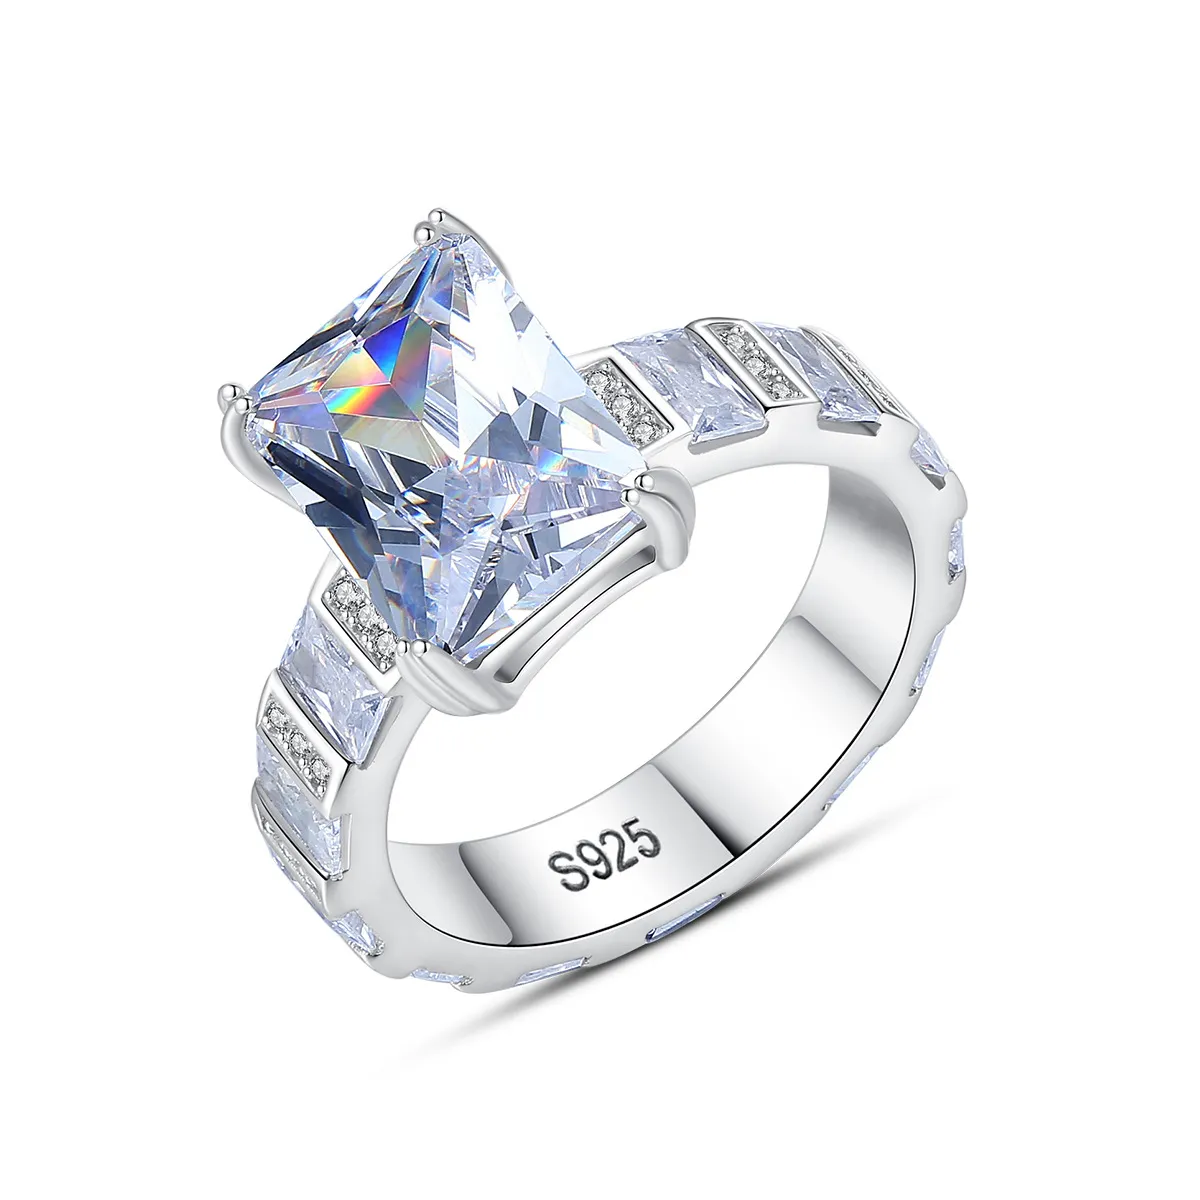 Yeni S925 STERLING Gümüş Yüzük Markası AAA Zircon Full Diamond Ring Lüks Yüksek Son Yüzük Avrupa ve Amerikan Sıcak Moda Kadınlar Halka Sevgililer Günü Anneler Günü Hediye SPC